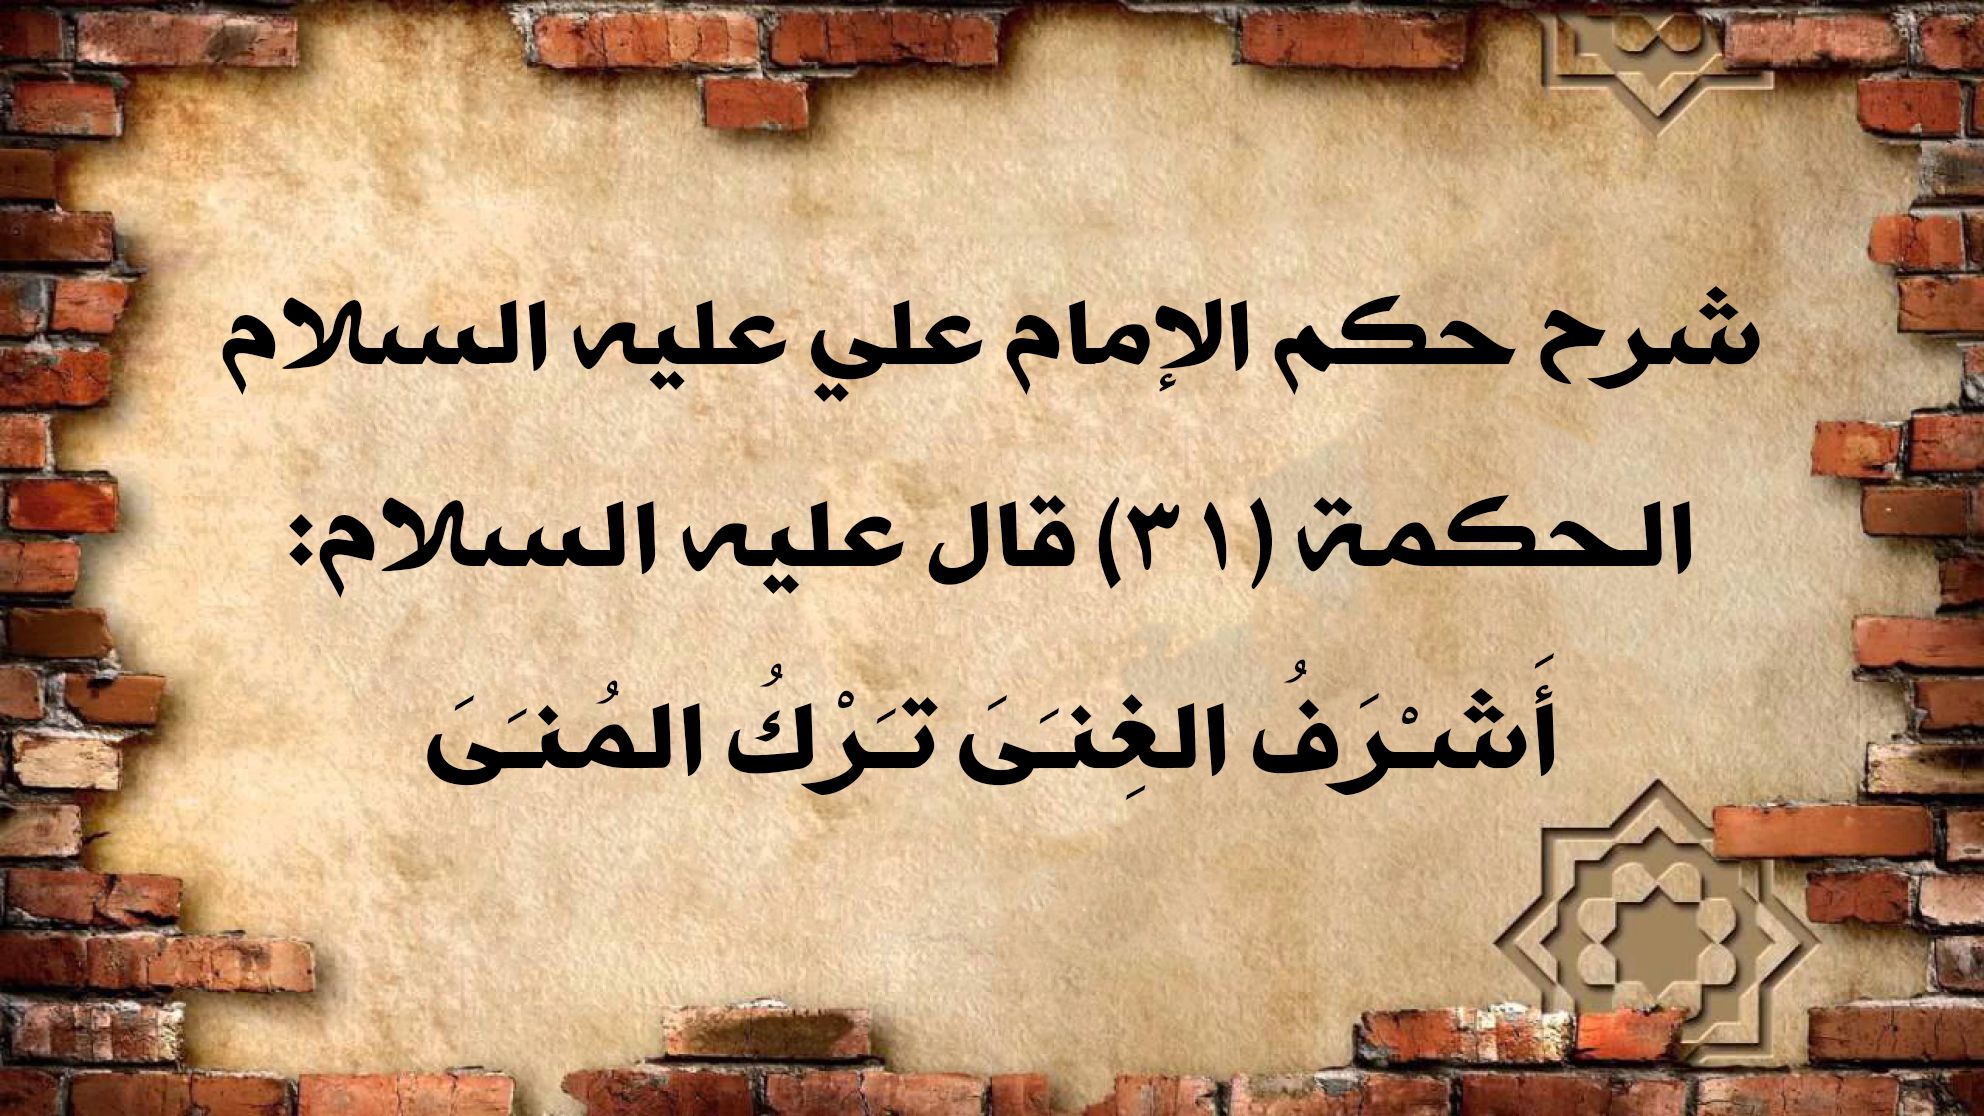 شرح حكم الإمام علي عليه السلام الحكمة (31) قال عليه السلام: أَشـْرَفُ الغِنـَىَ تـَرْكُ المُنـَىَ